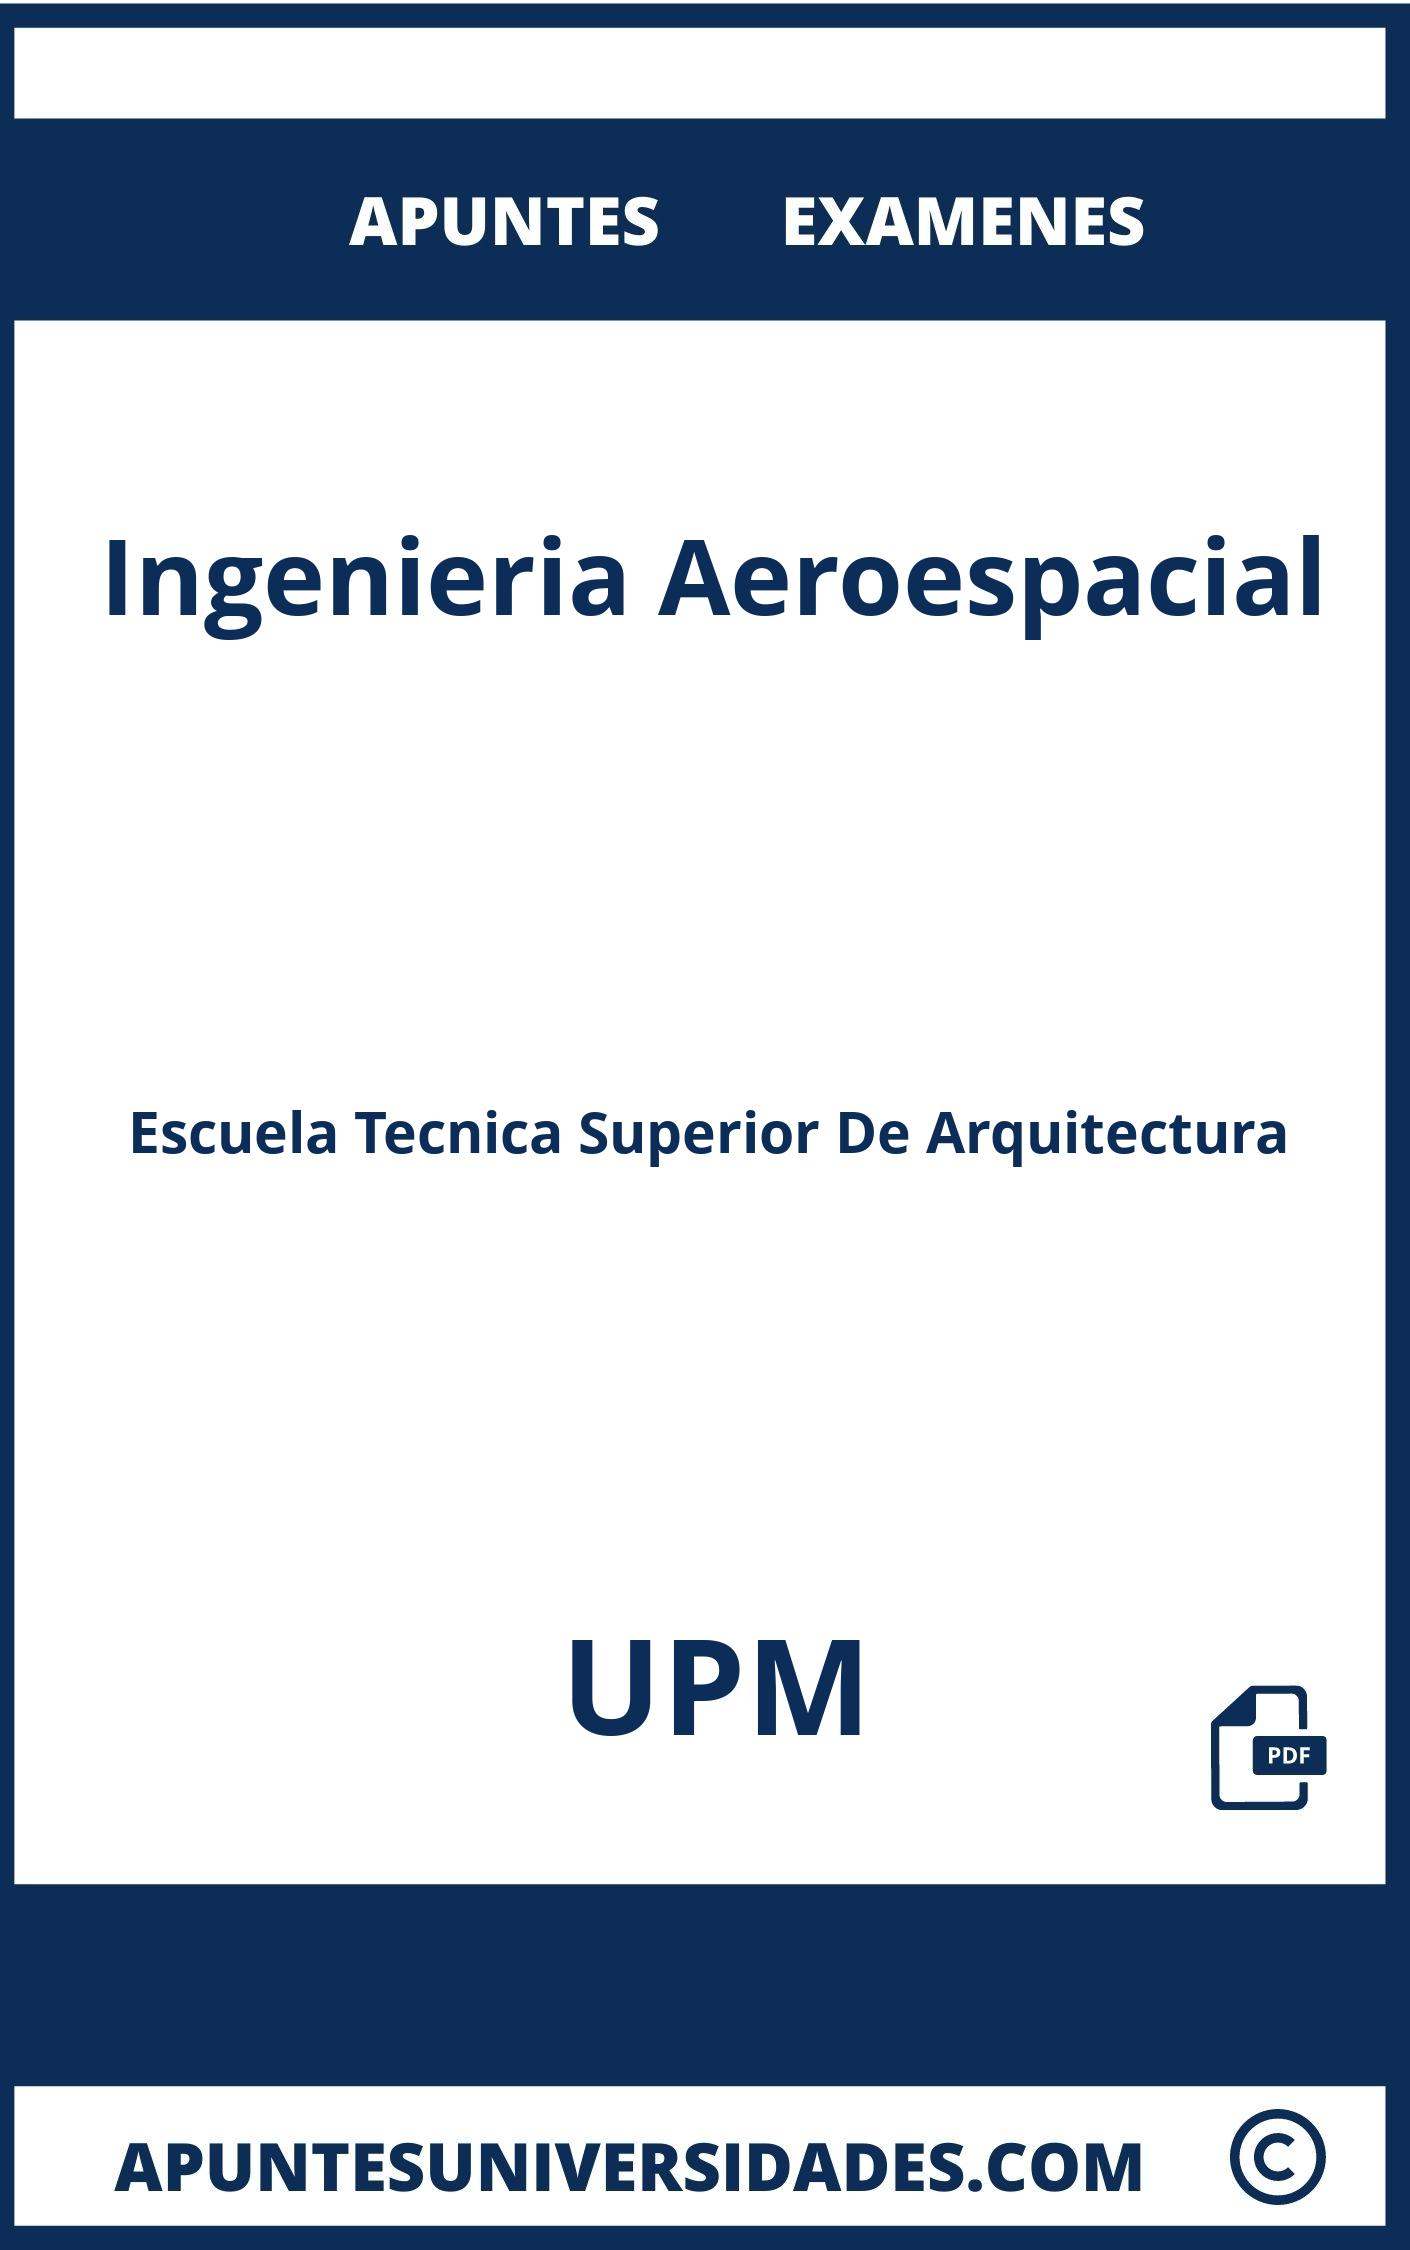 Apuntes Ingenieria Aeroespacial UPM y Examenes